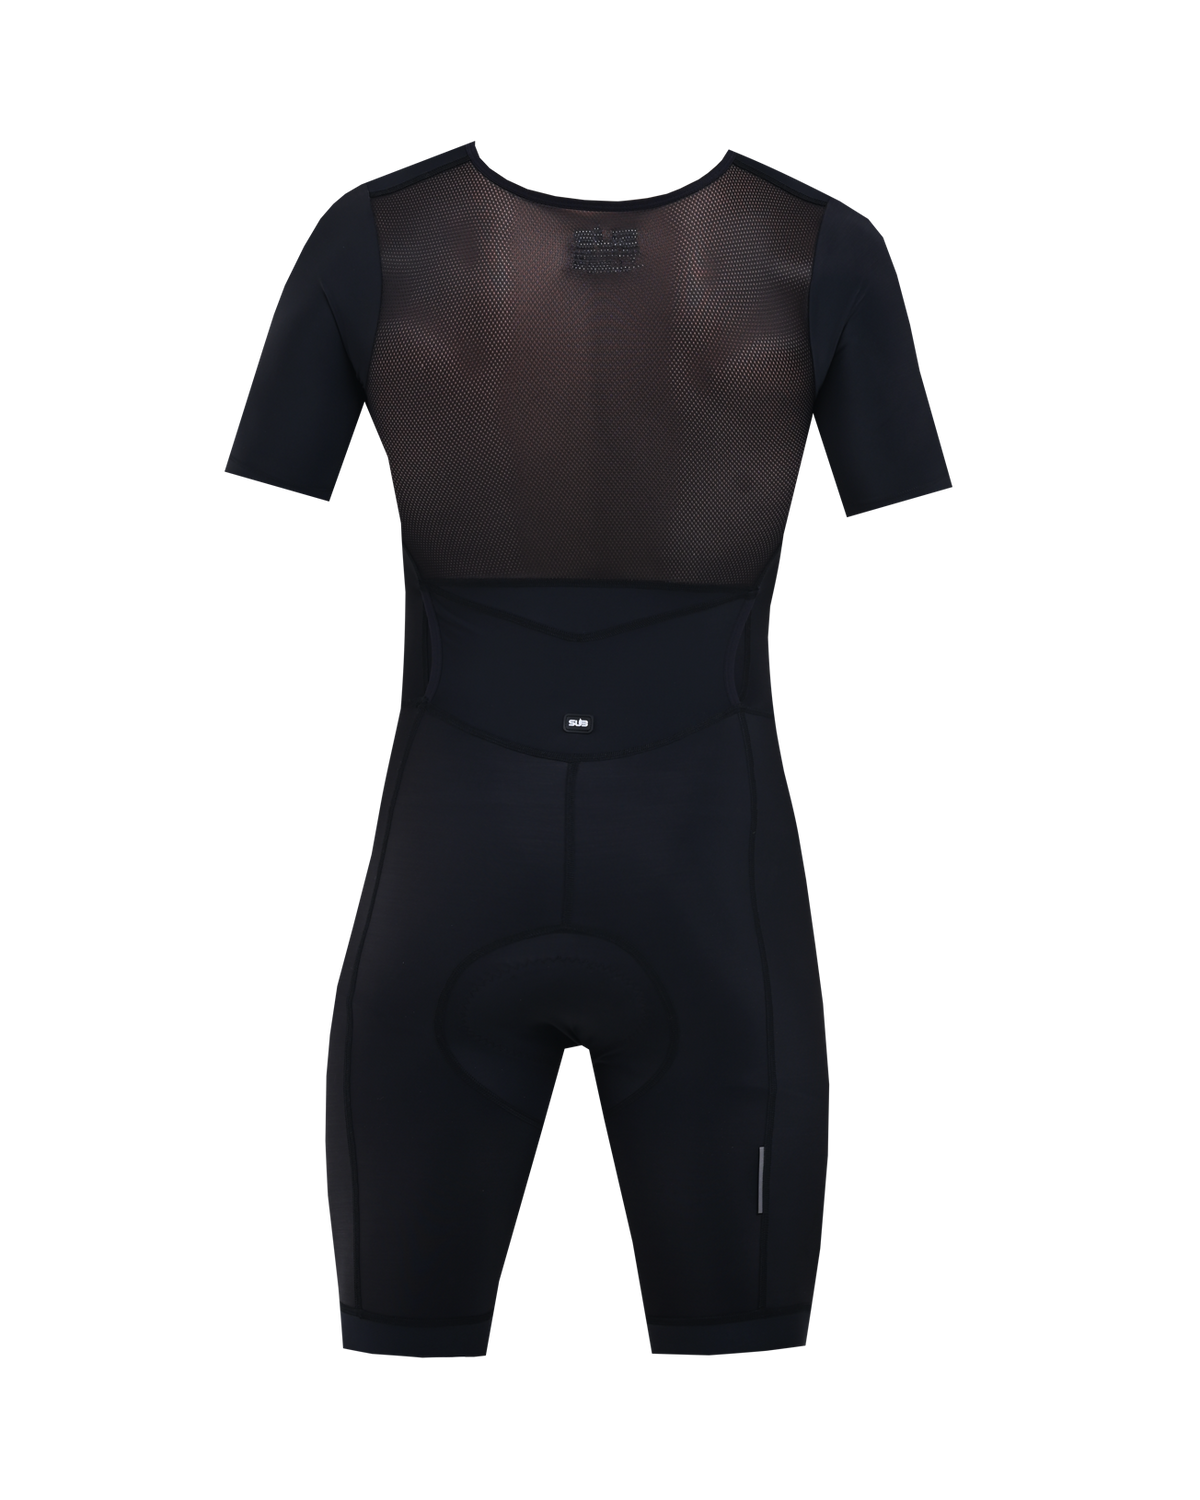 SUB Premium Trisuit Men Short Sleeves Black